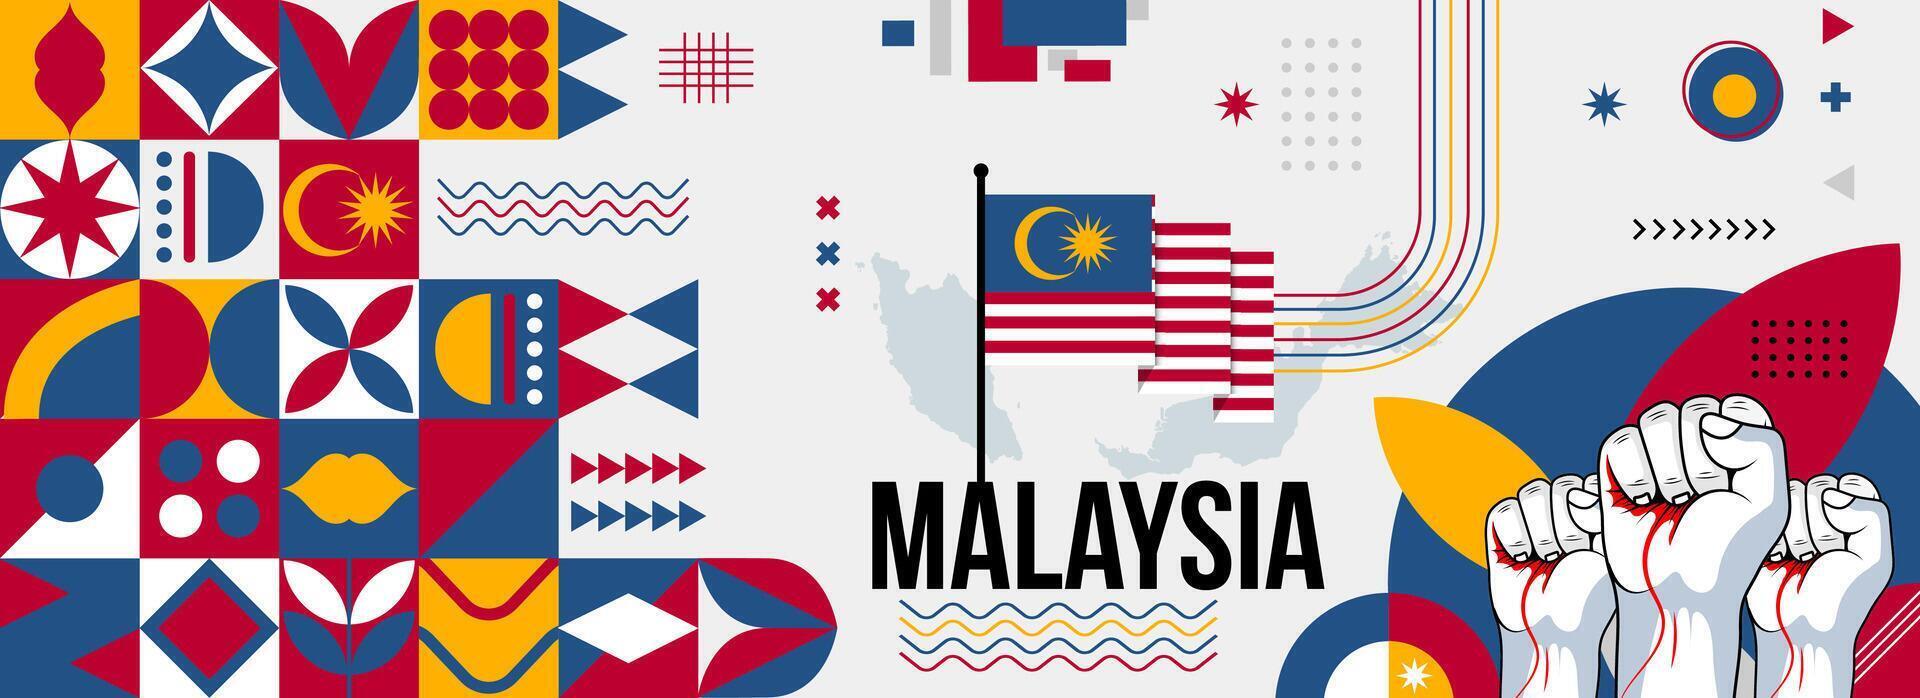 Maleisië nationaal of onafhankelijkheid dag banier voor land viering. vlag en kaart van Maleisië met verheven vuisten. modern retro ontwerp met typorgaphy abstract meetkundig pictogrammen. vector illustratie